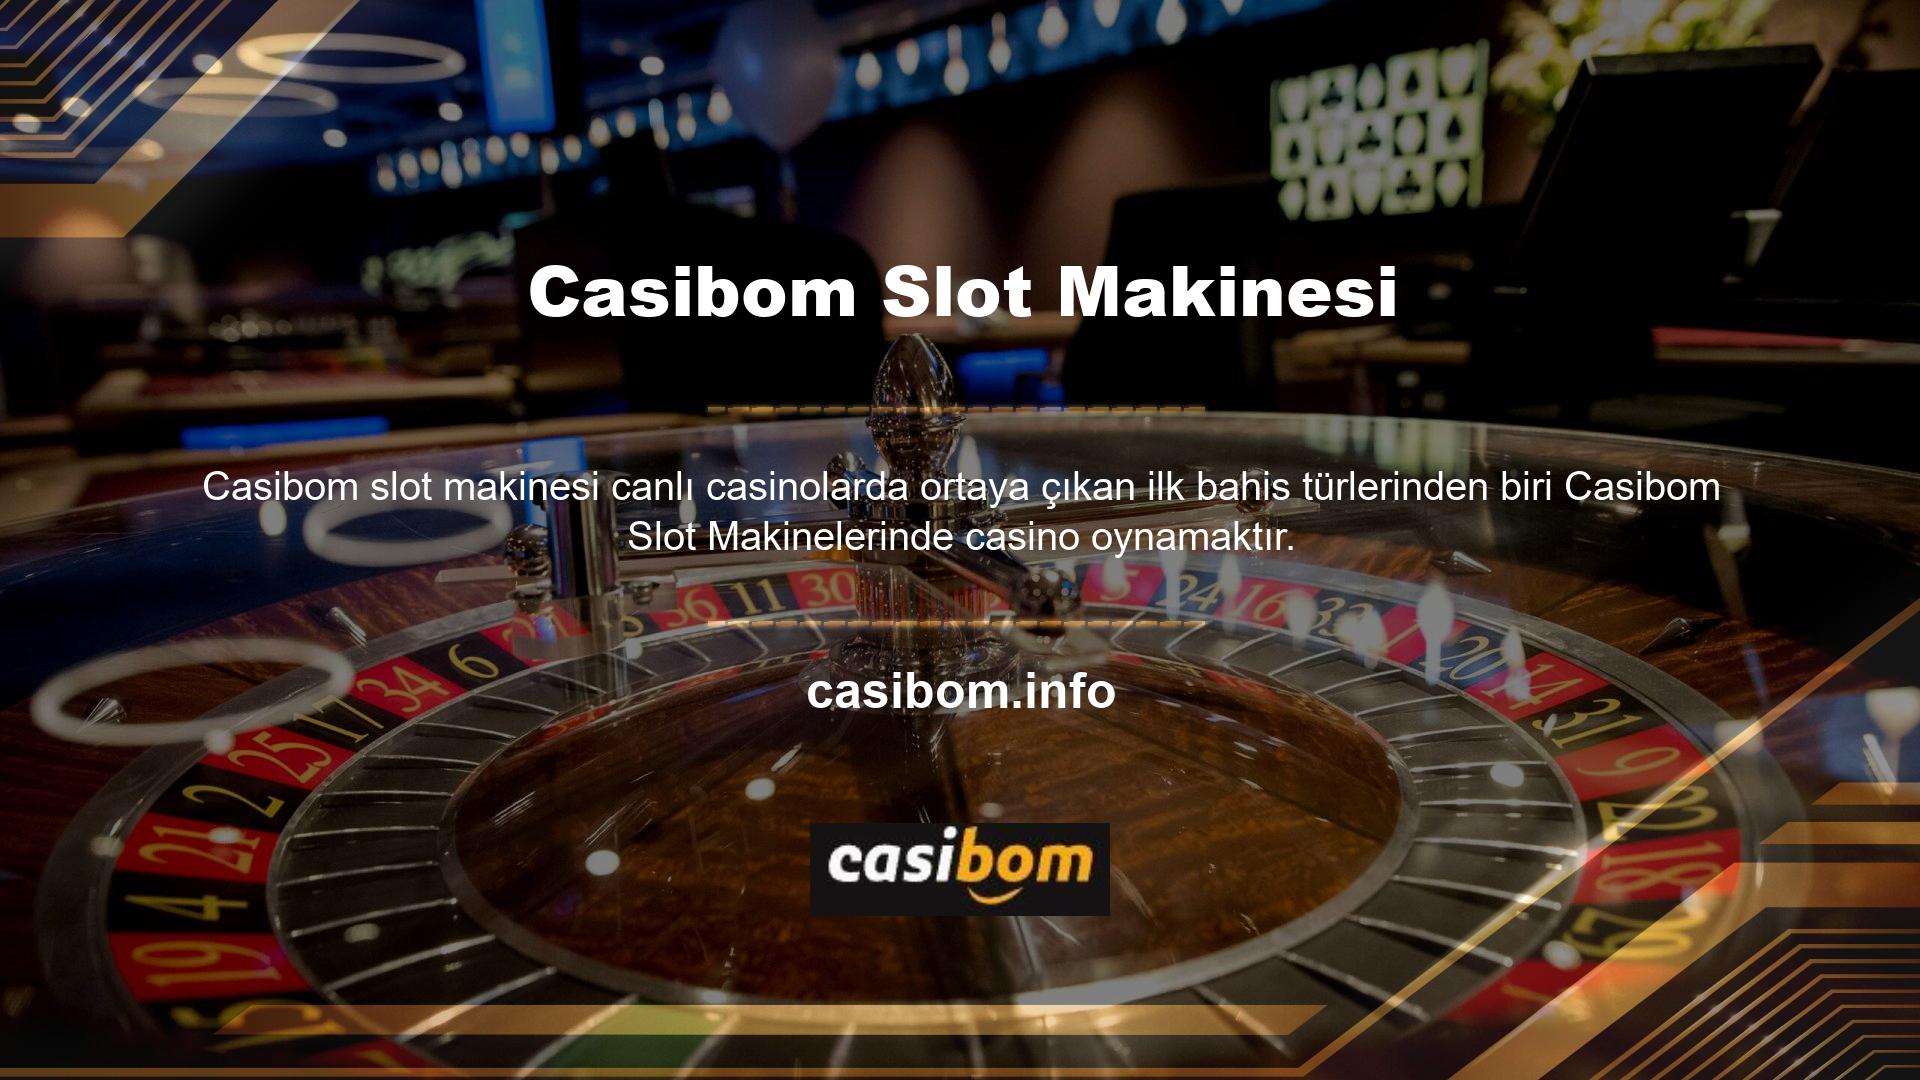 Casibom casino oyunlarının başarısı, bahis fırsatlarında ve büyük kazançlarda önemli bir artışa yol açtı